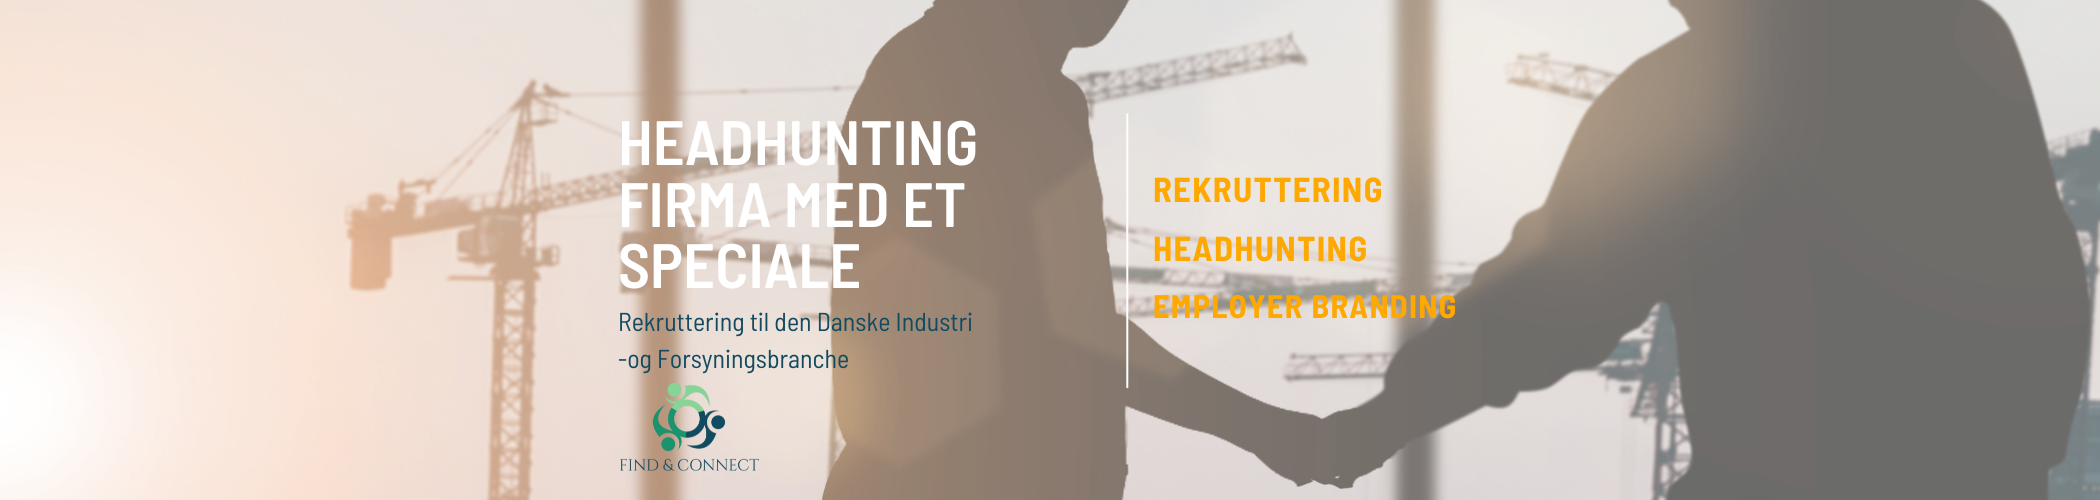 Rekruttering til den Danske Industri og Forsyningsbranchen